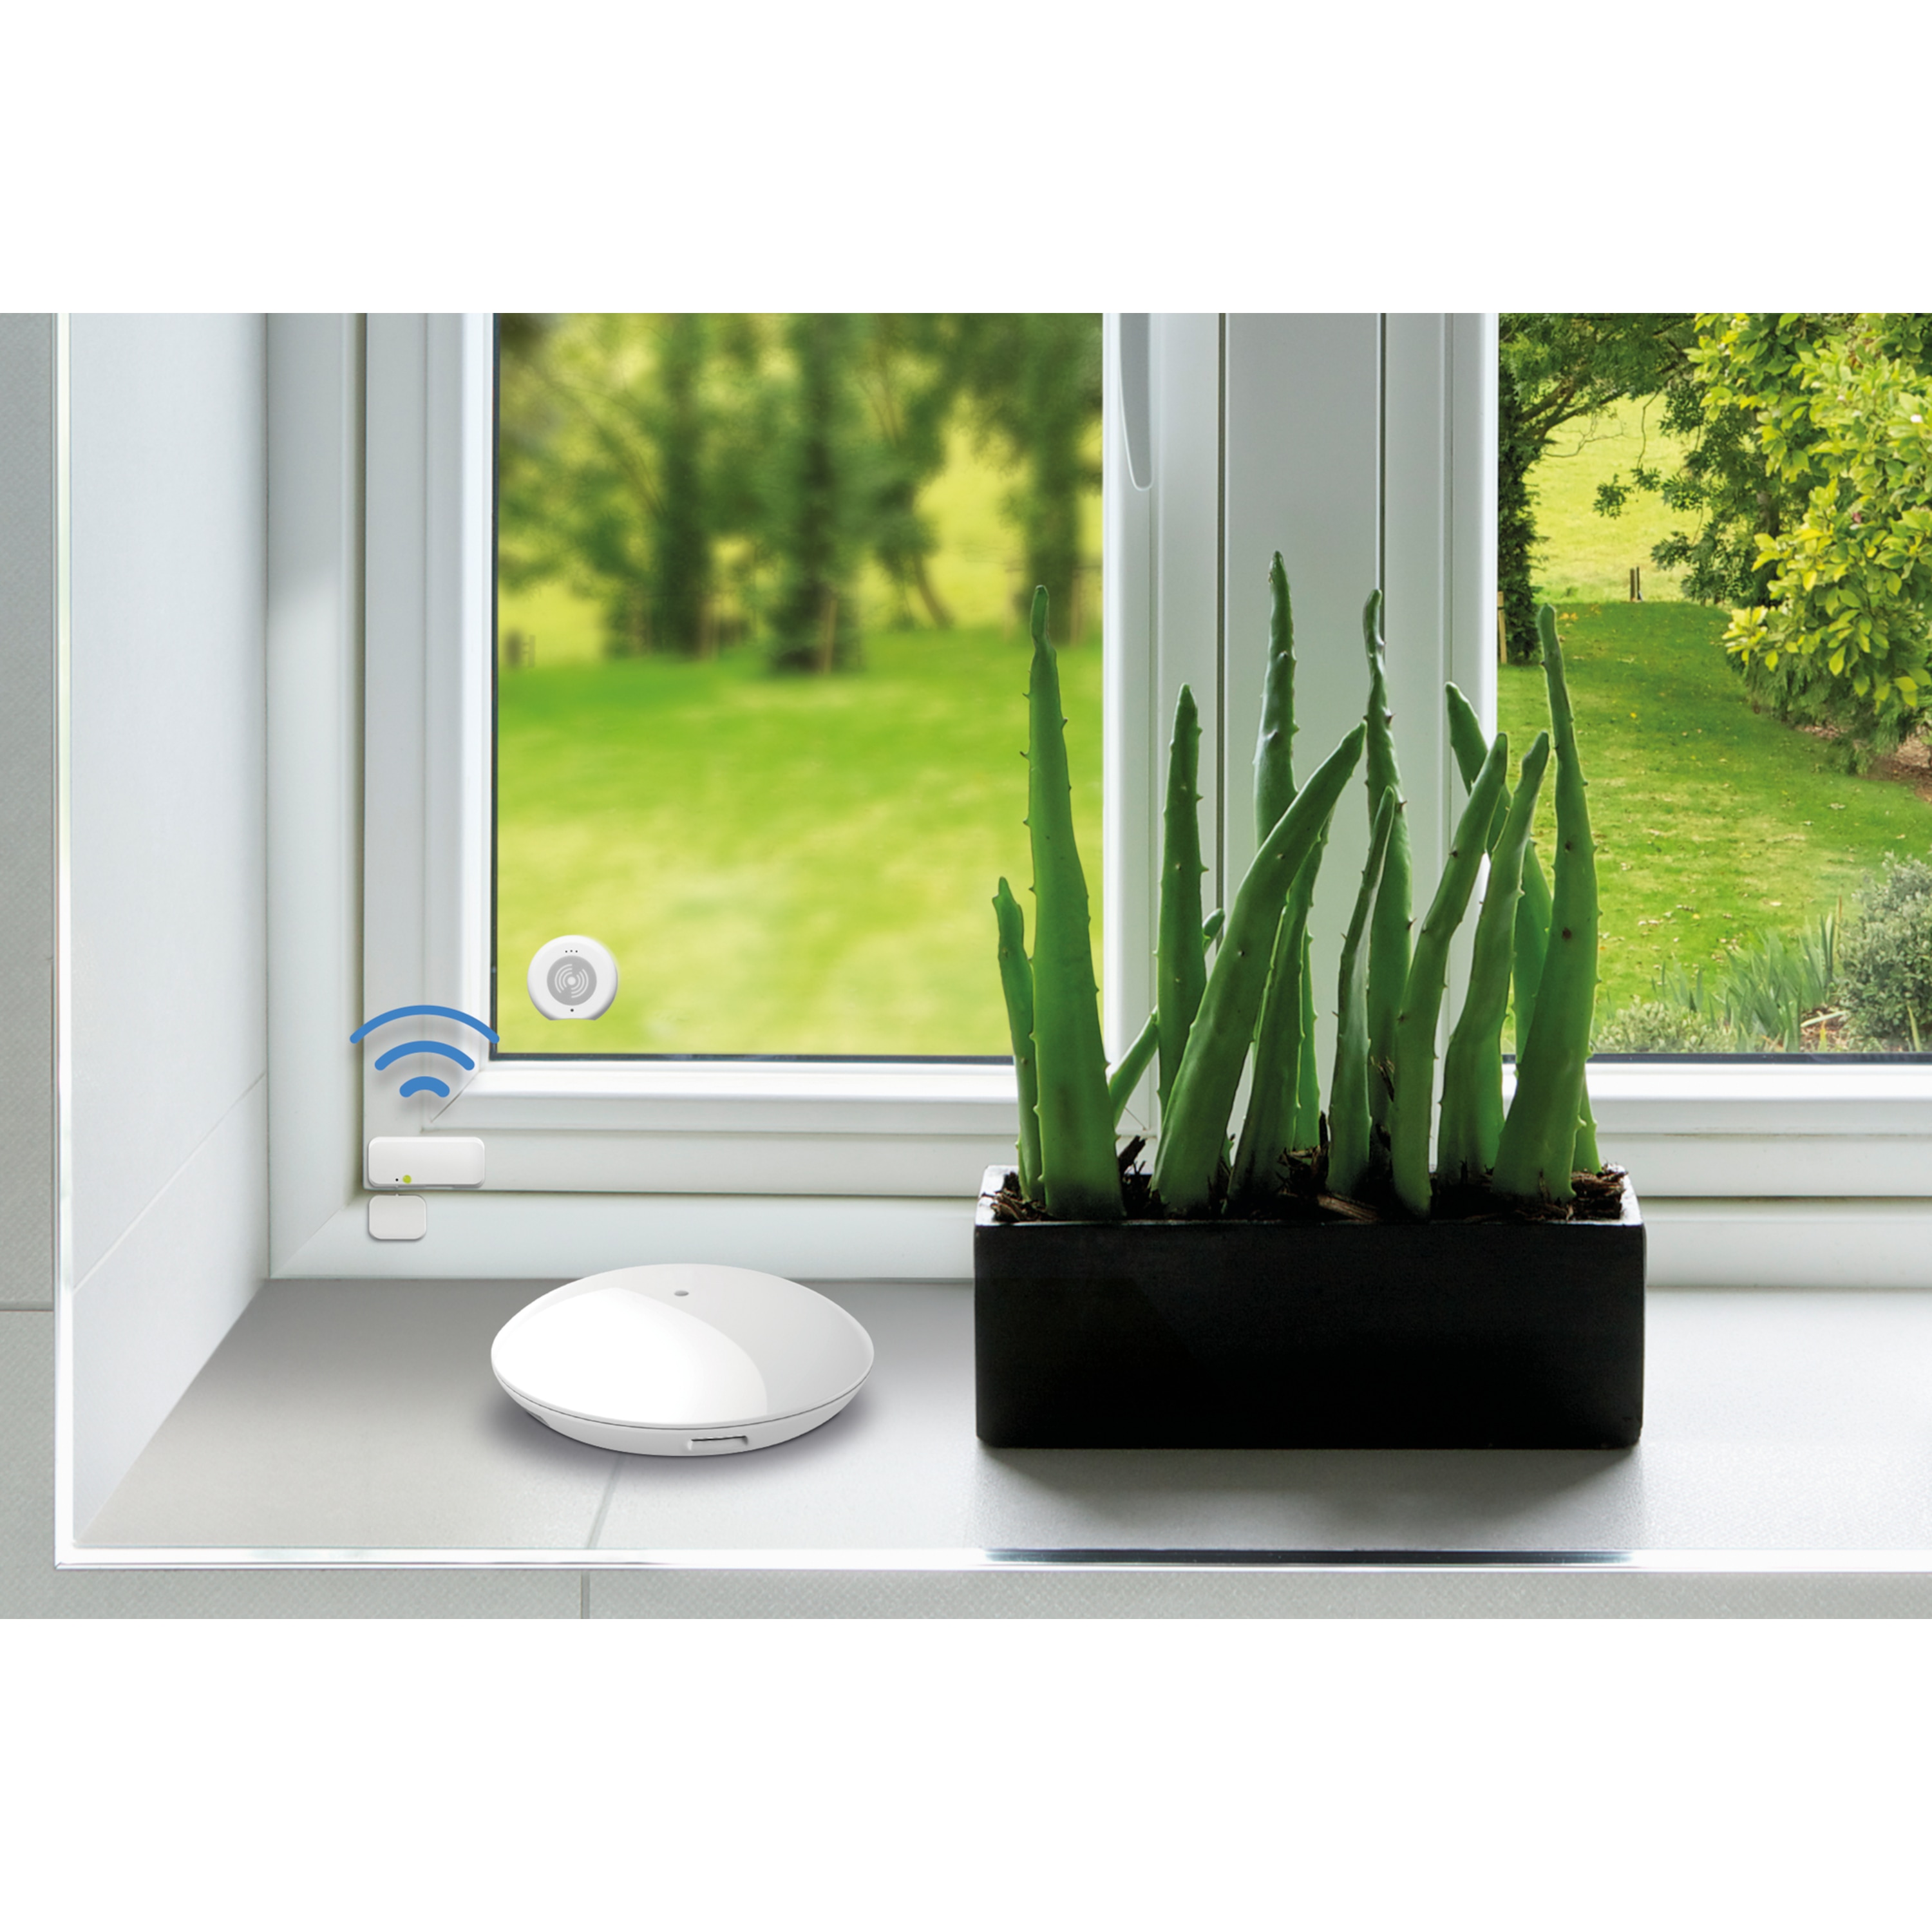 MEDION® Smart Home Tür- und Fensterkontakt P85803, erkennt geöffnete Türen, Fenster und Schränke, löst Alarm aus, Steuerung per App, innogy SmartHome kompatibel